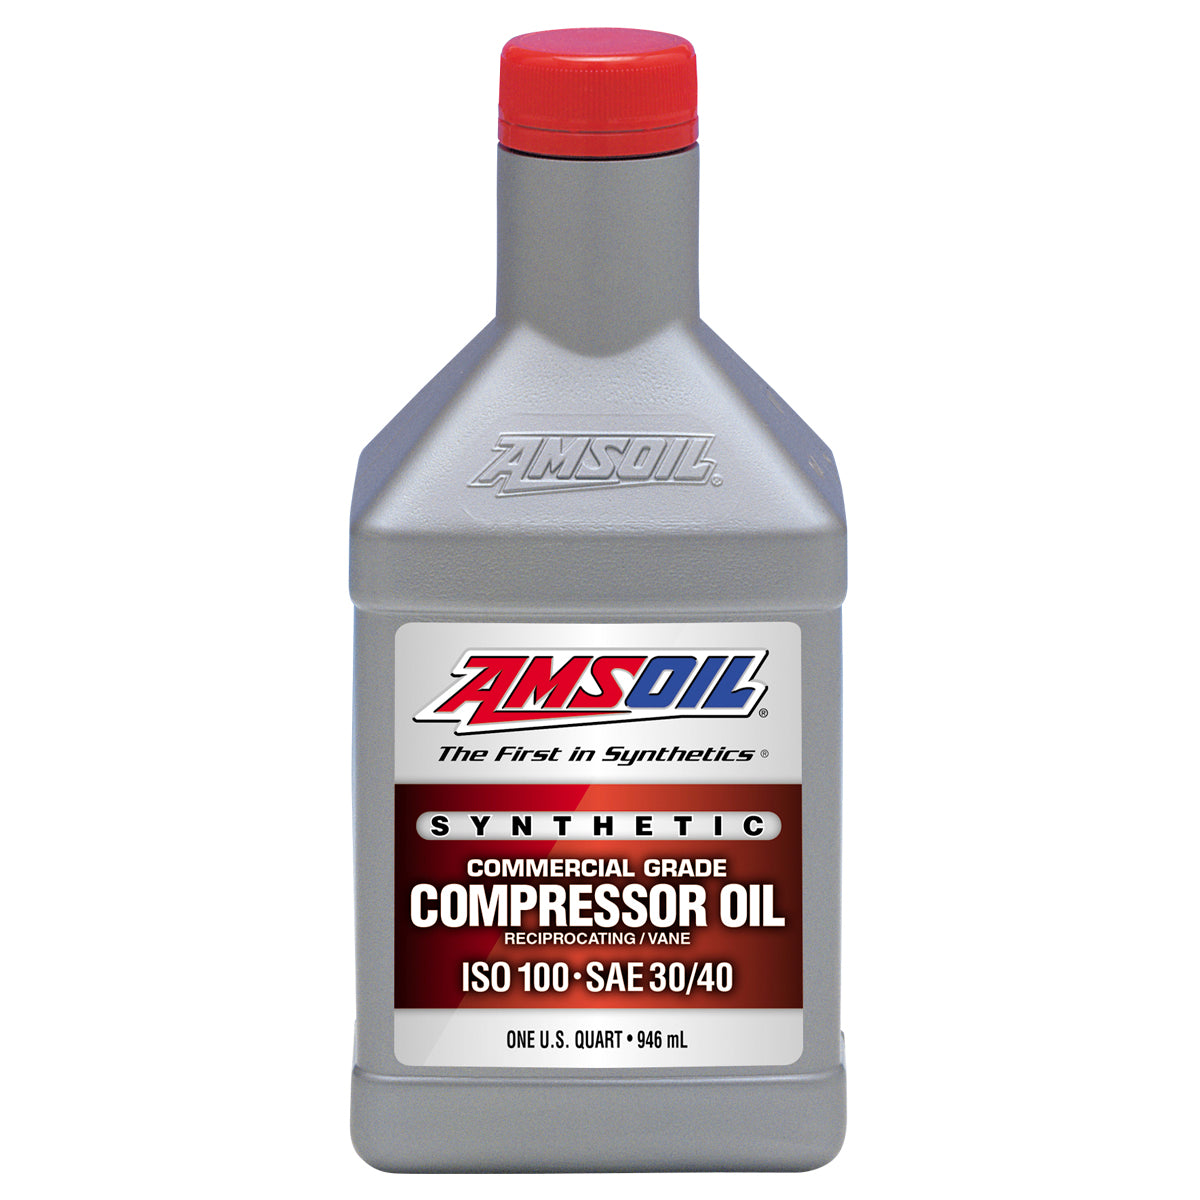 XAO PCKQT | SYNTHETIC COMPRESSOR OIL- ISO 100, SAE 30/40 | 1 QT